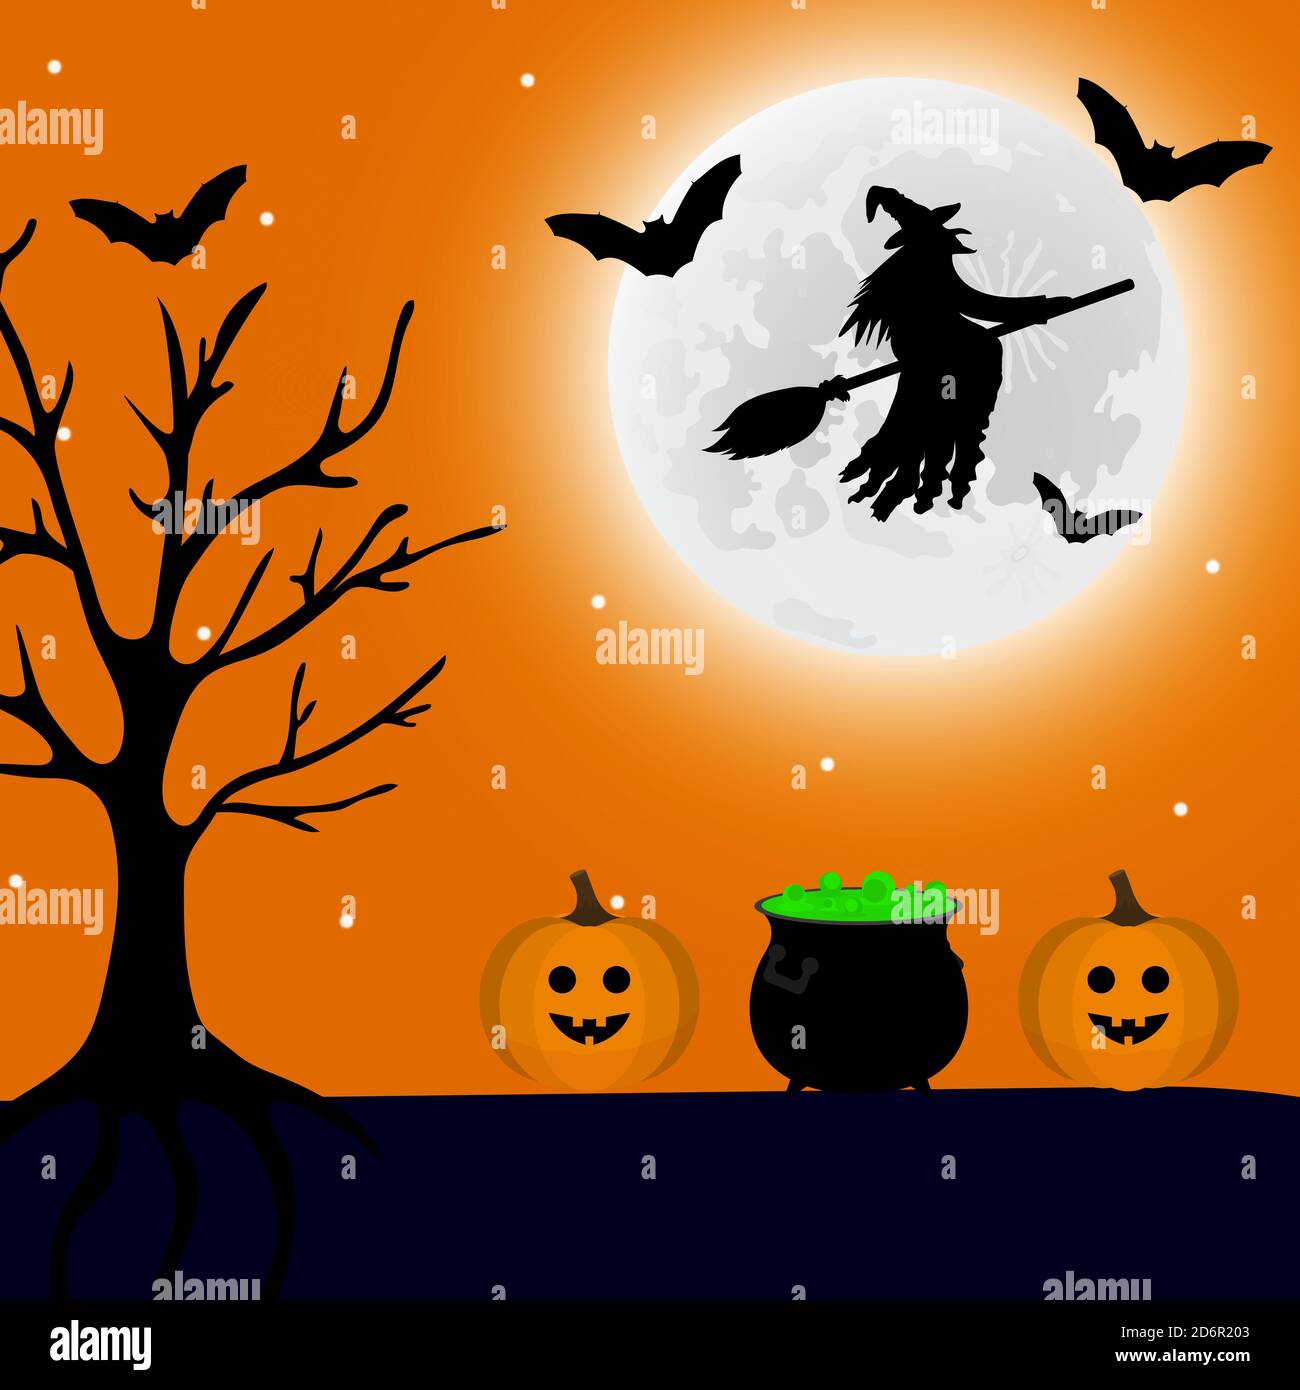 La strega vola di notte su Halloween, e una pozione e una lanterna di zucca sono nelle vicinanze. Illustrazione vettoriale Illustrazione Vettoriale